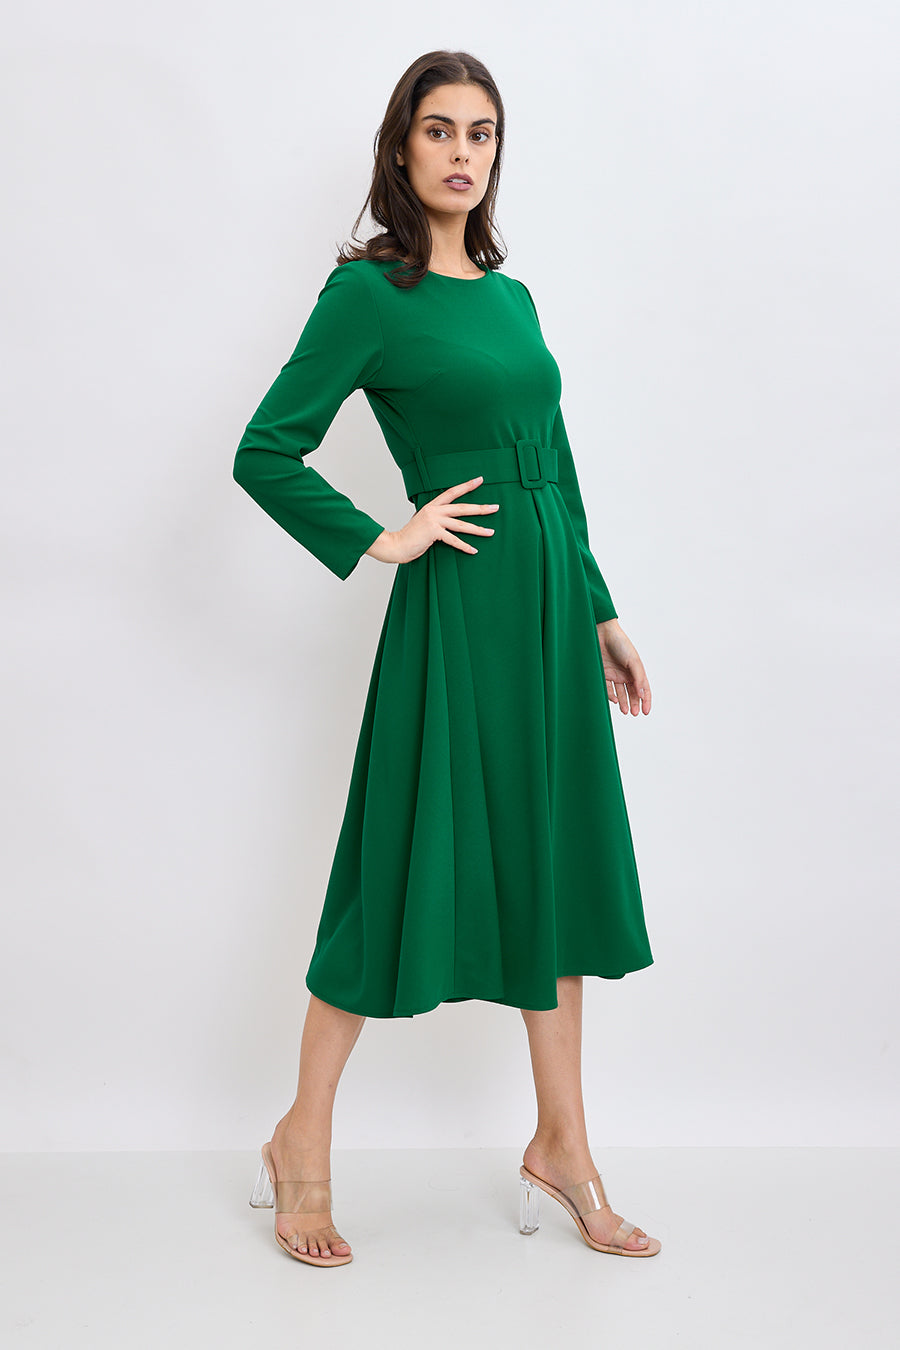 Γυναικείο φόρεμα Fatima, Πράσινο 2